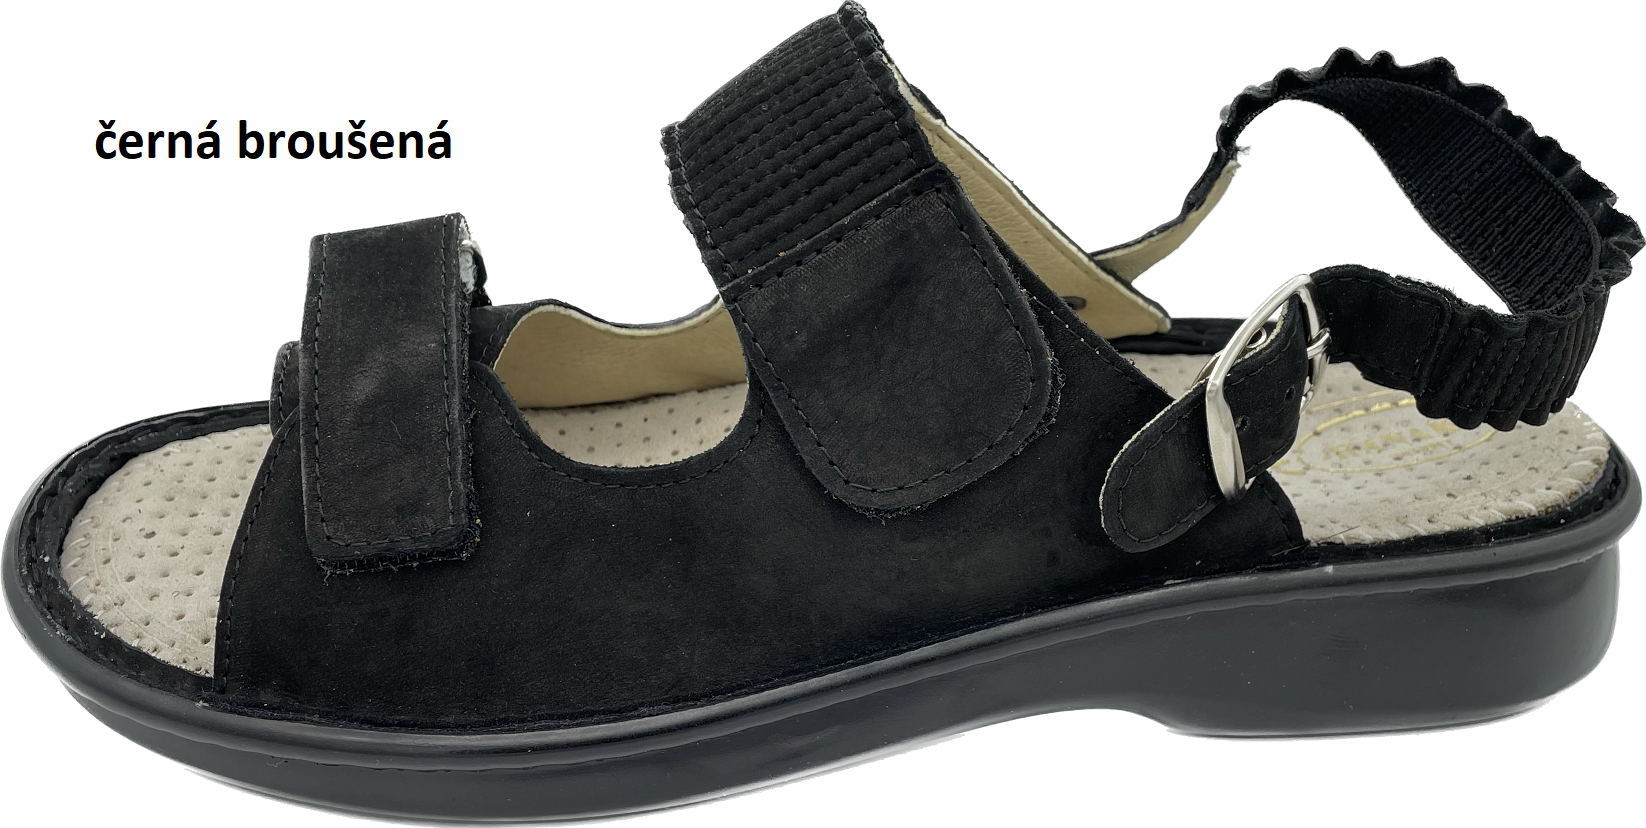 Boty Hanák vzor 418 P - černá podešev Barva usně: černá broušená, Velikosti obuvi: 42